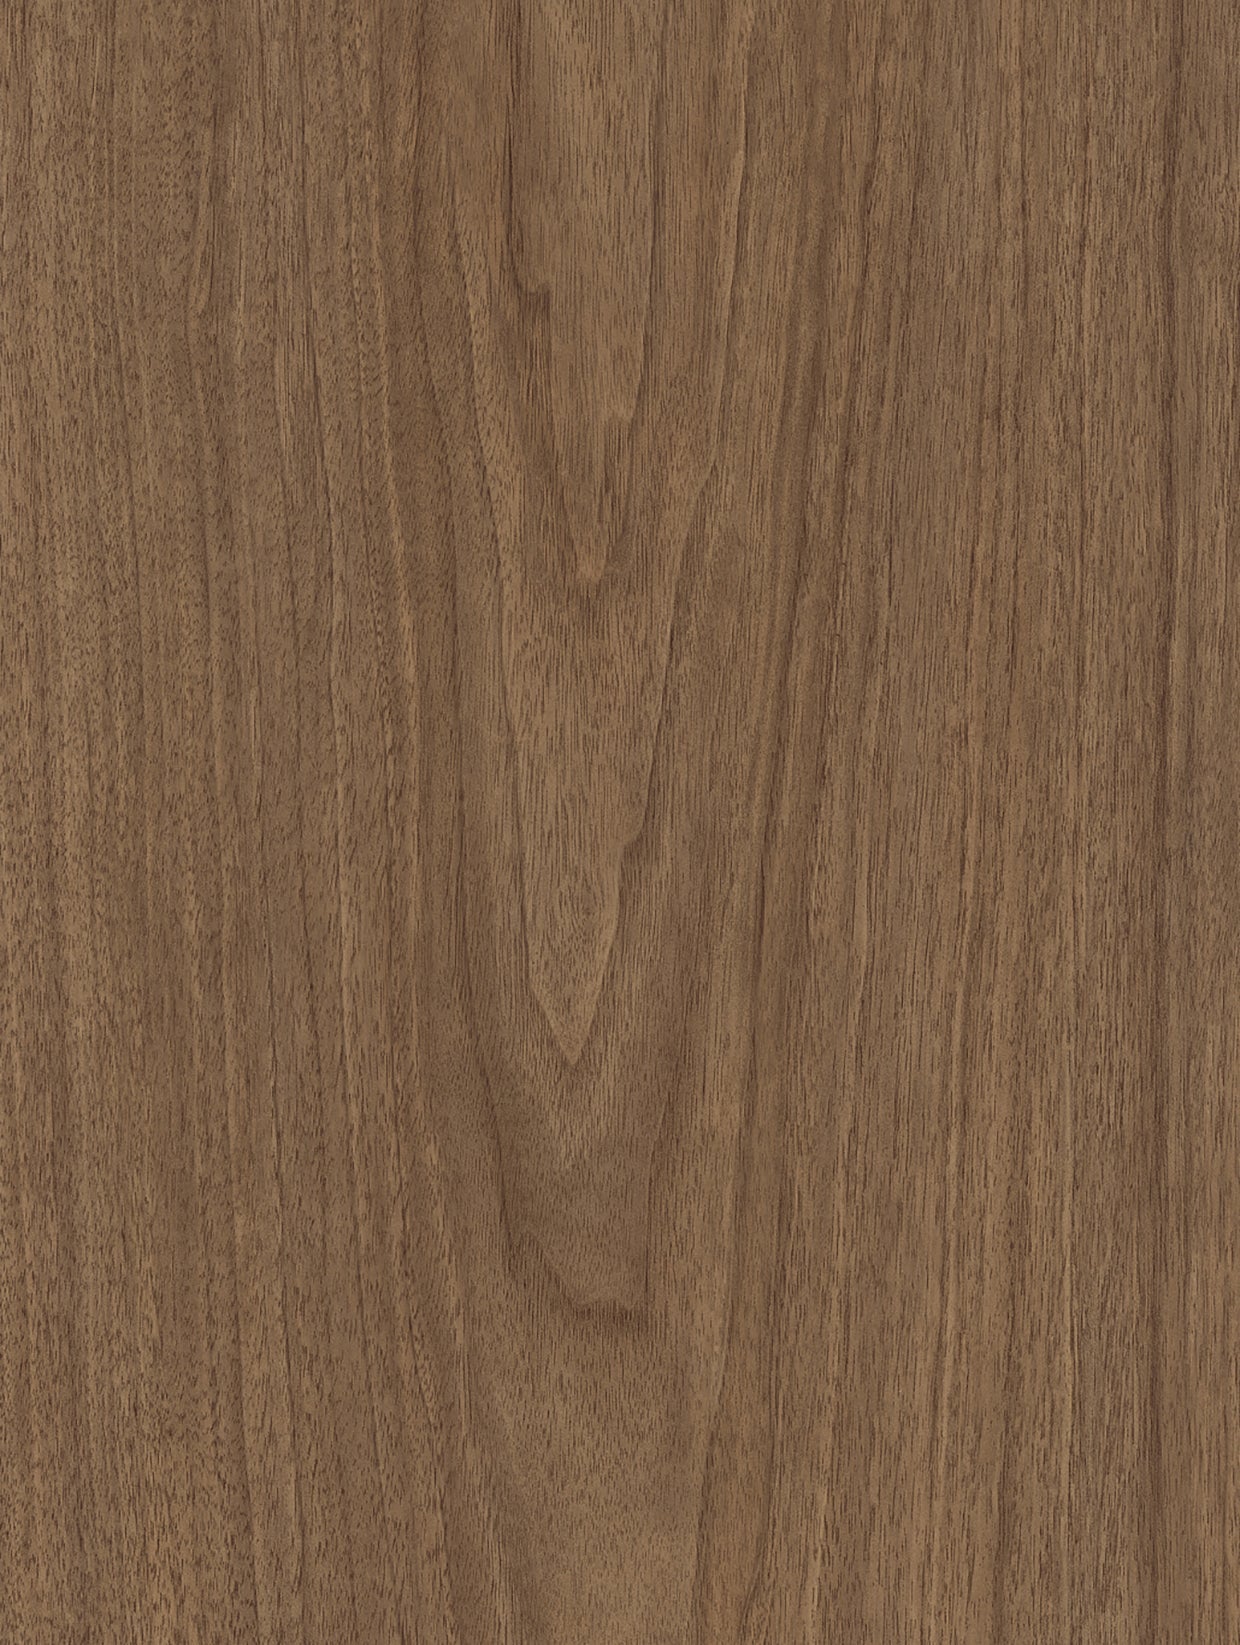 Wood - Dark | Holzdekor Dunkel Rost/Soft/Strukturiert Musterfolie A3